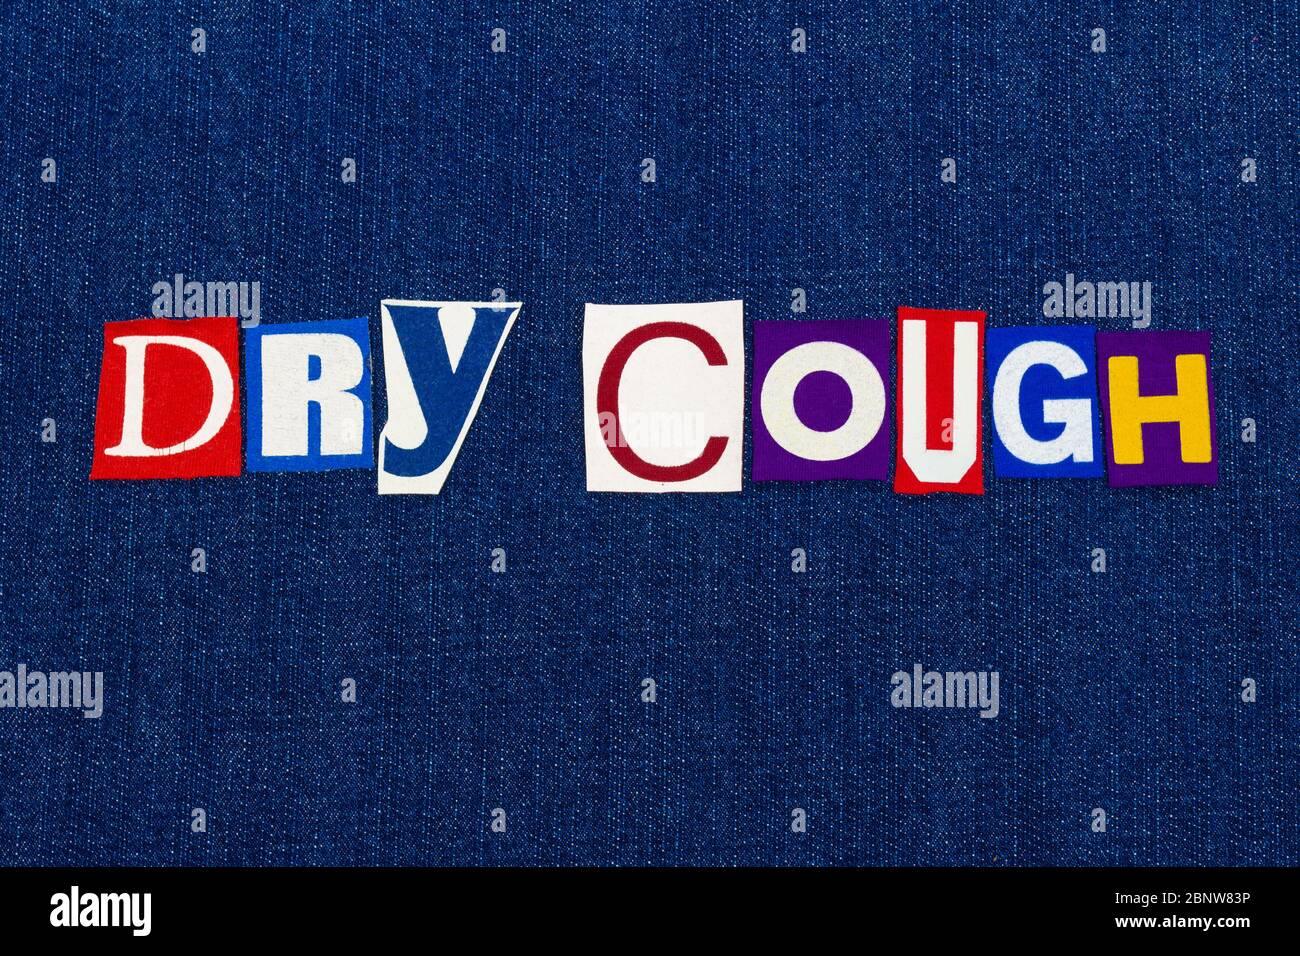 TROCKENER HUSTEN Coronavirus COVID-19 Symptom, Textwortscollage, weltweite Informationen zum Grippevirus, farbige Buchstaben auf blauem Denim, horizontaler Aspekt Stockfoto